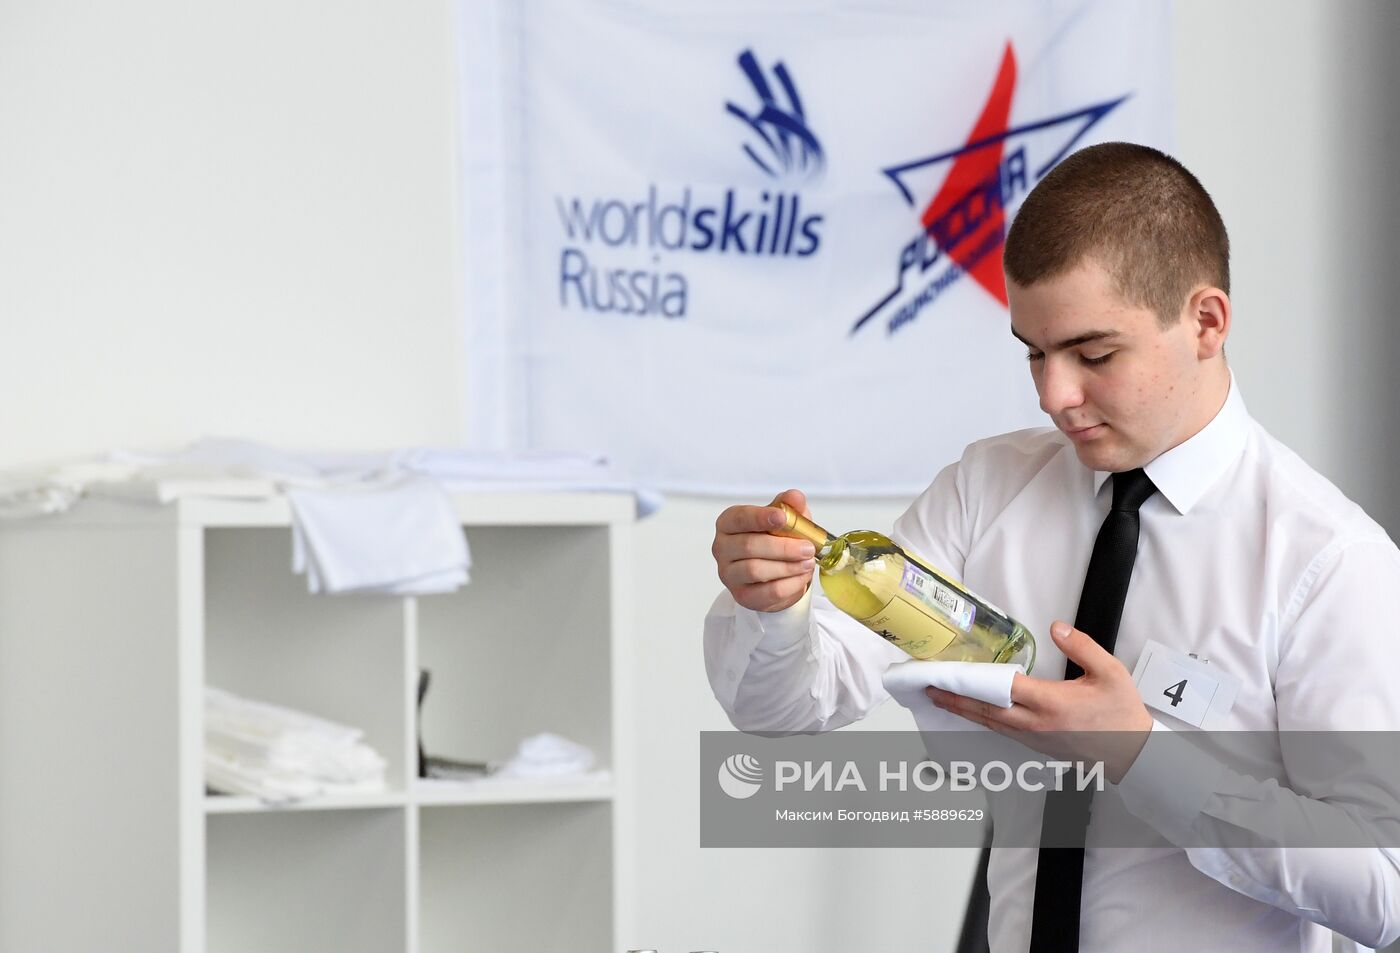 Национальный чемпионат "Молодые профессионалы" (WorldSkills Russia)